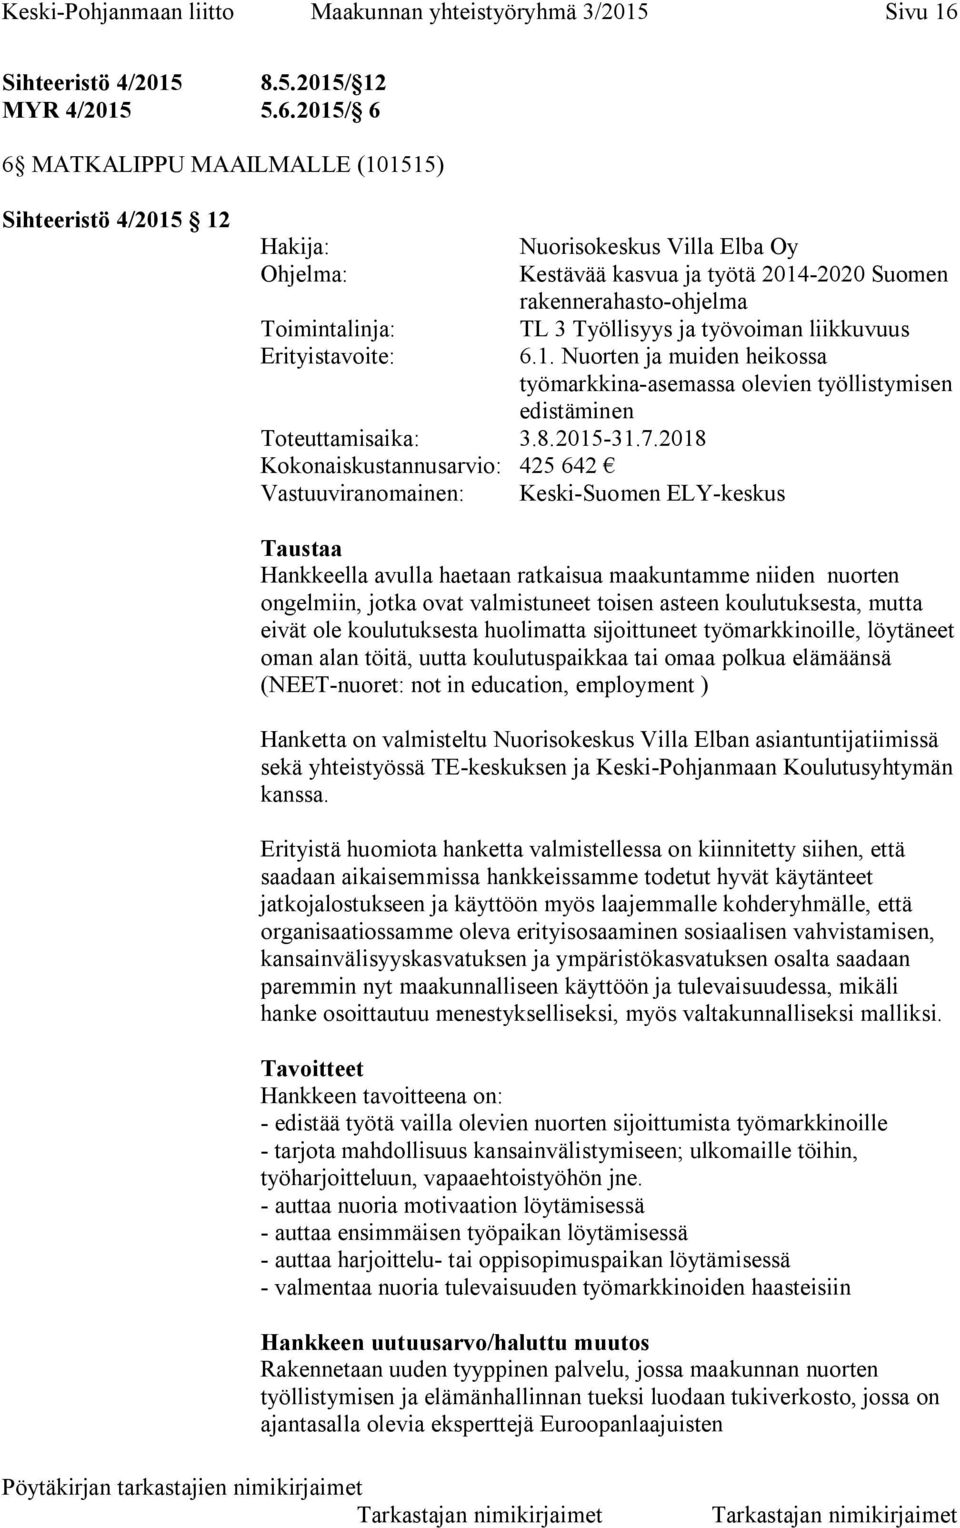 2015/ 6 6 MATKALIPPU MAAILMALLE (101515) Sihteeristö 4/2015 12 Hakija: Nuorisokeskus Villa Elba Oy Ohjelma: Kestävää kasvua ja työtä 2014-2020 Suomen rakennerahasto-ohjelma Toimintalinja: TL 3